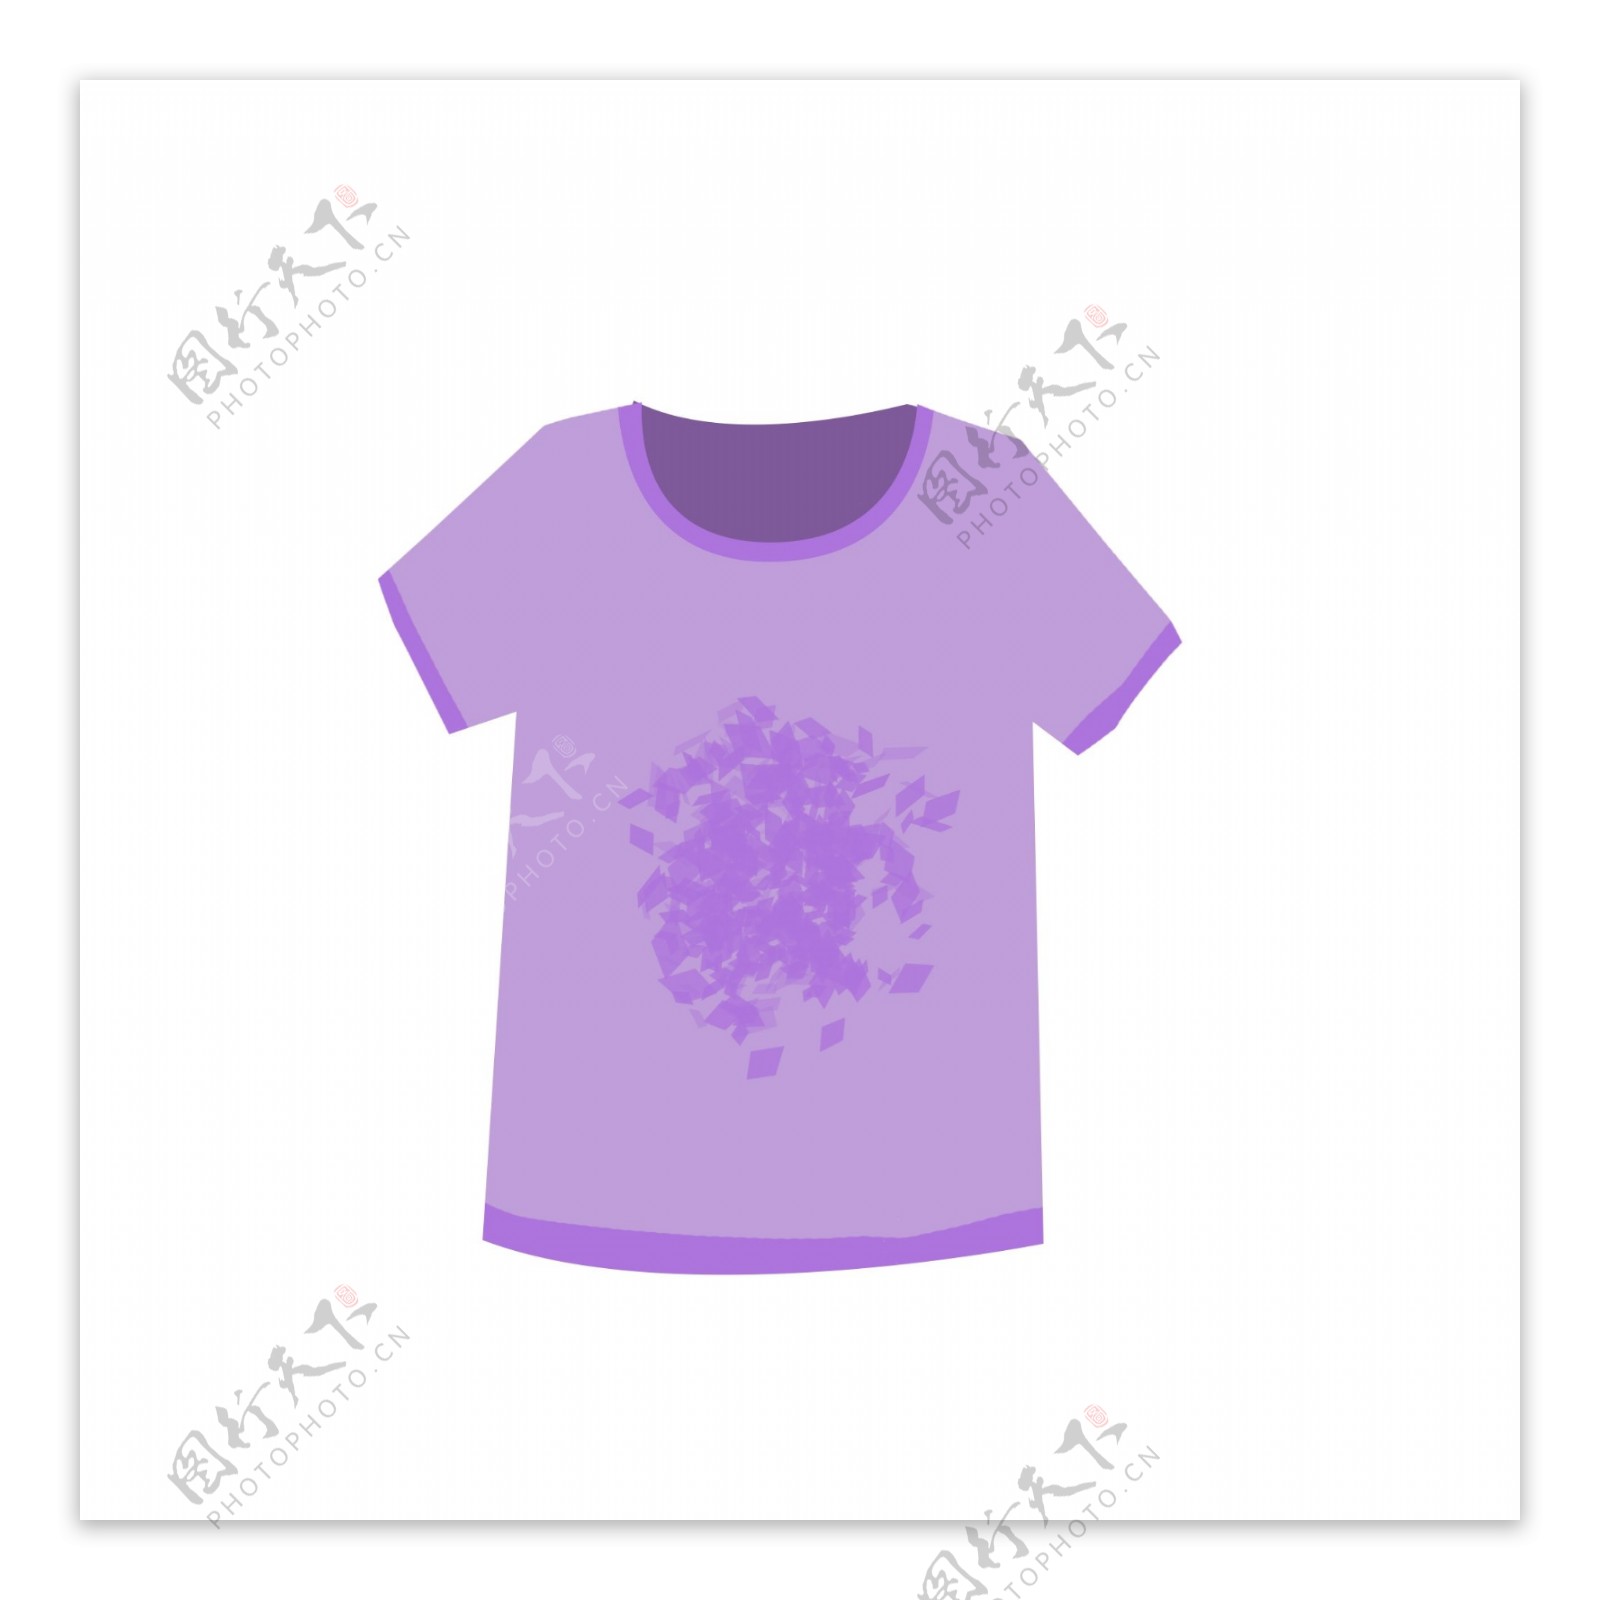 紫色印花短袖童装衣服元素